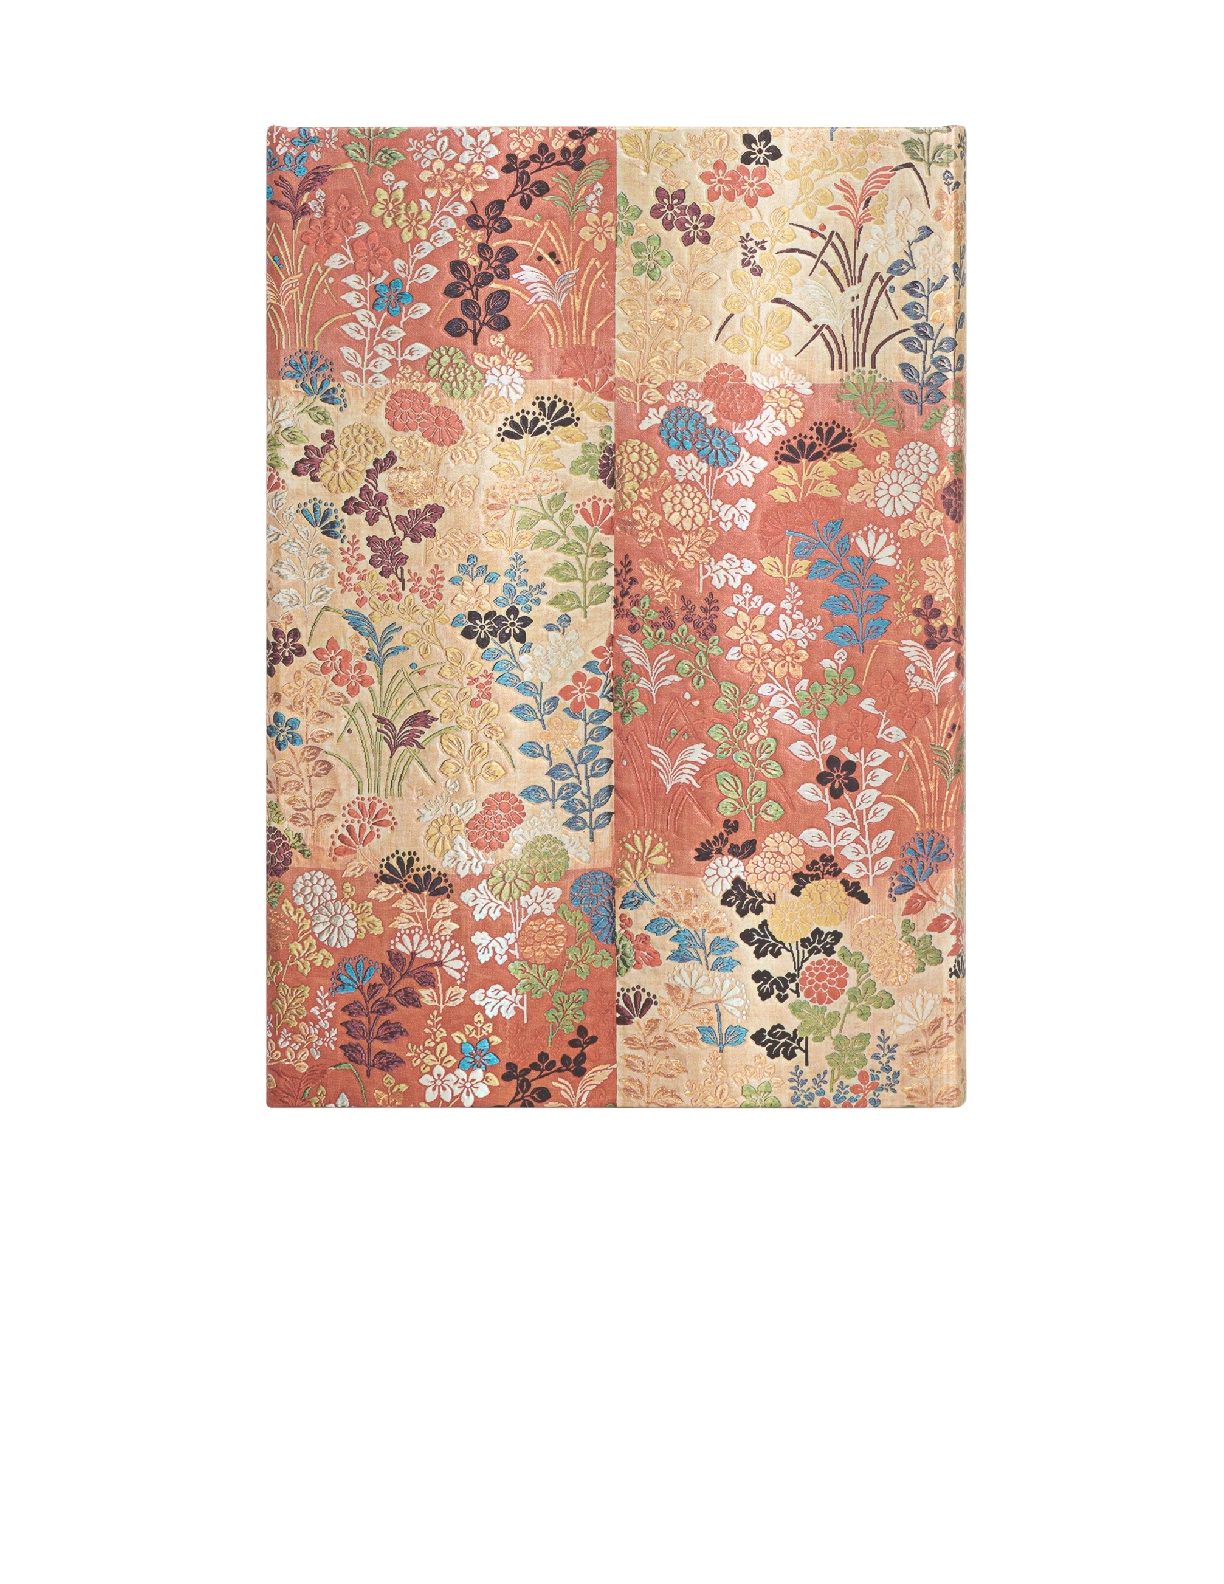 Kara-ori, Japanese Kimono, Hardcover, Midi, Lined, Wrap Closure, 144 Pg, 120 GSM